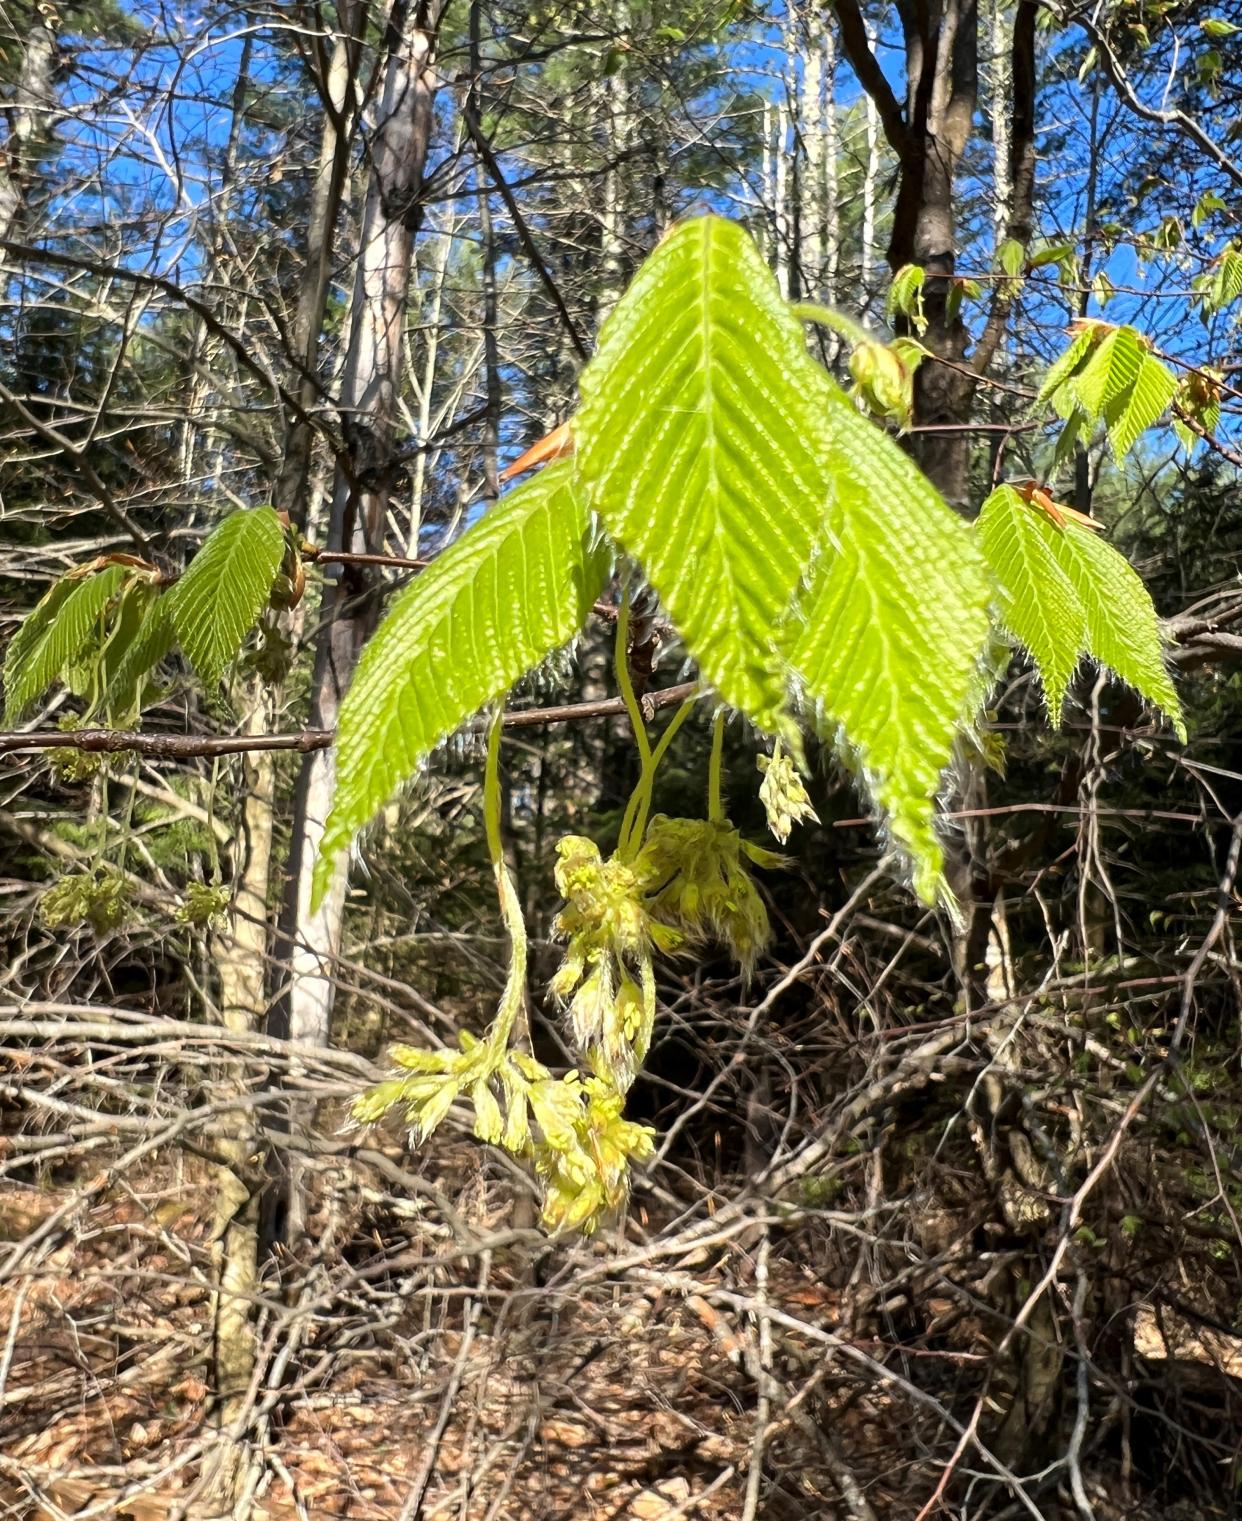 Beech leaf unfolding